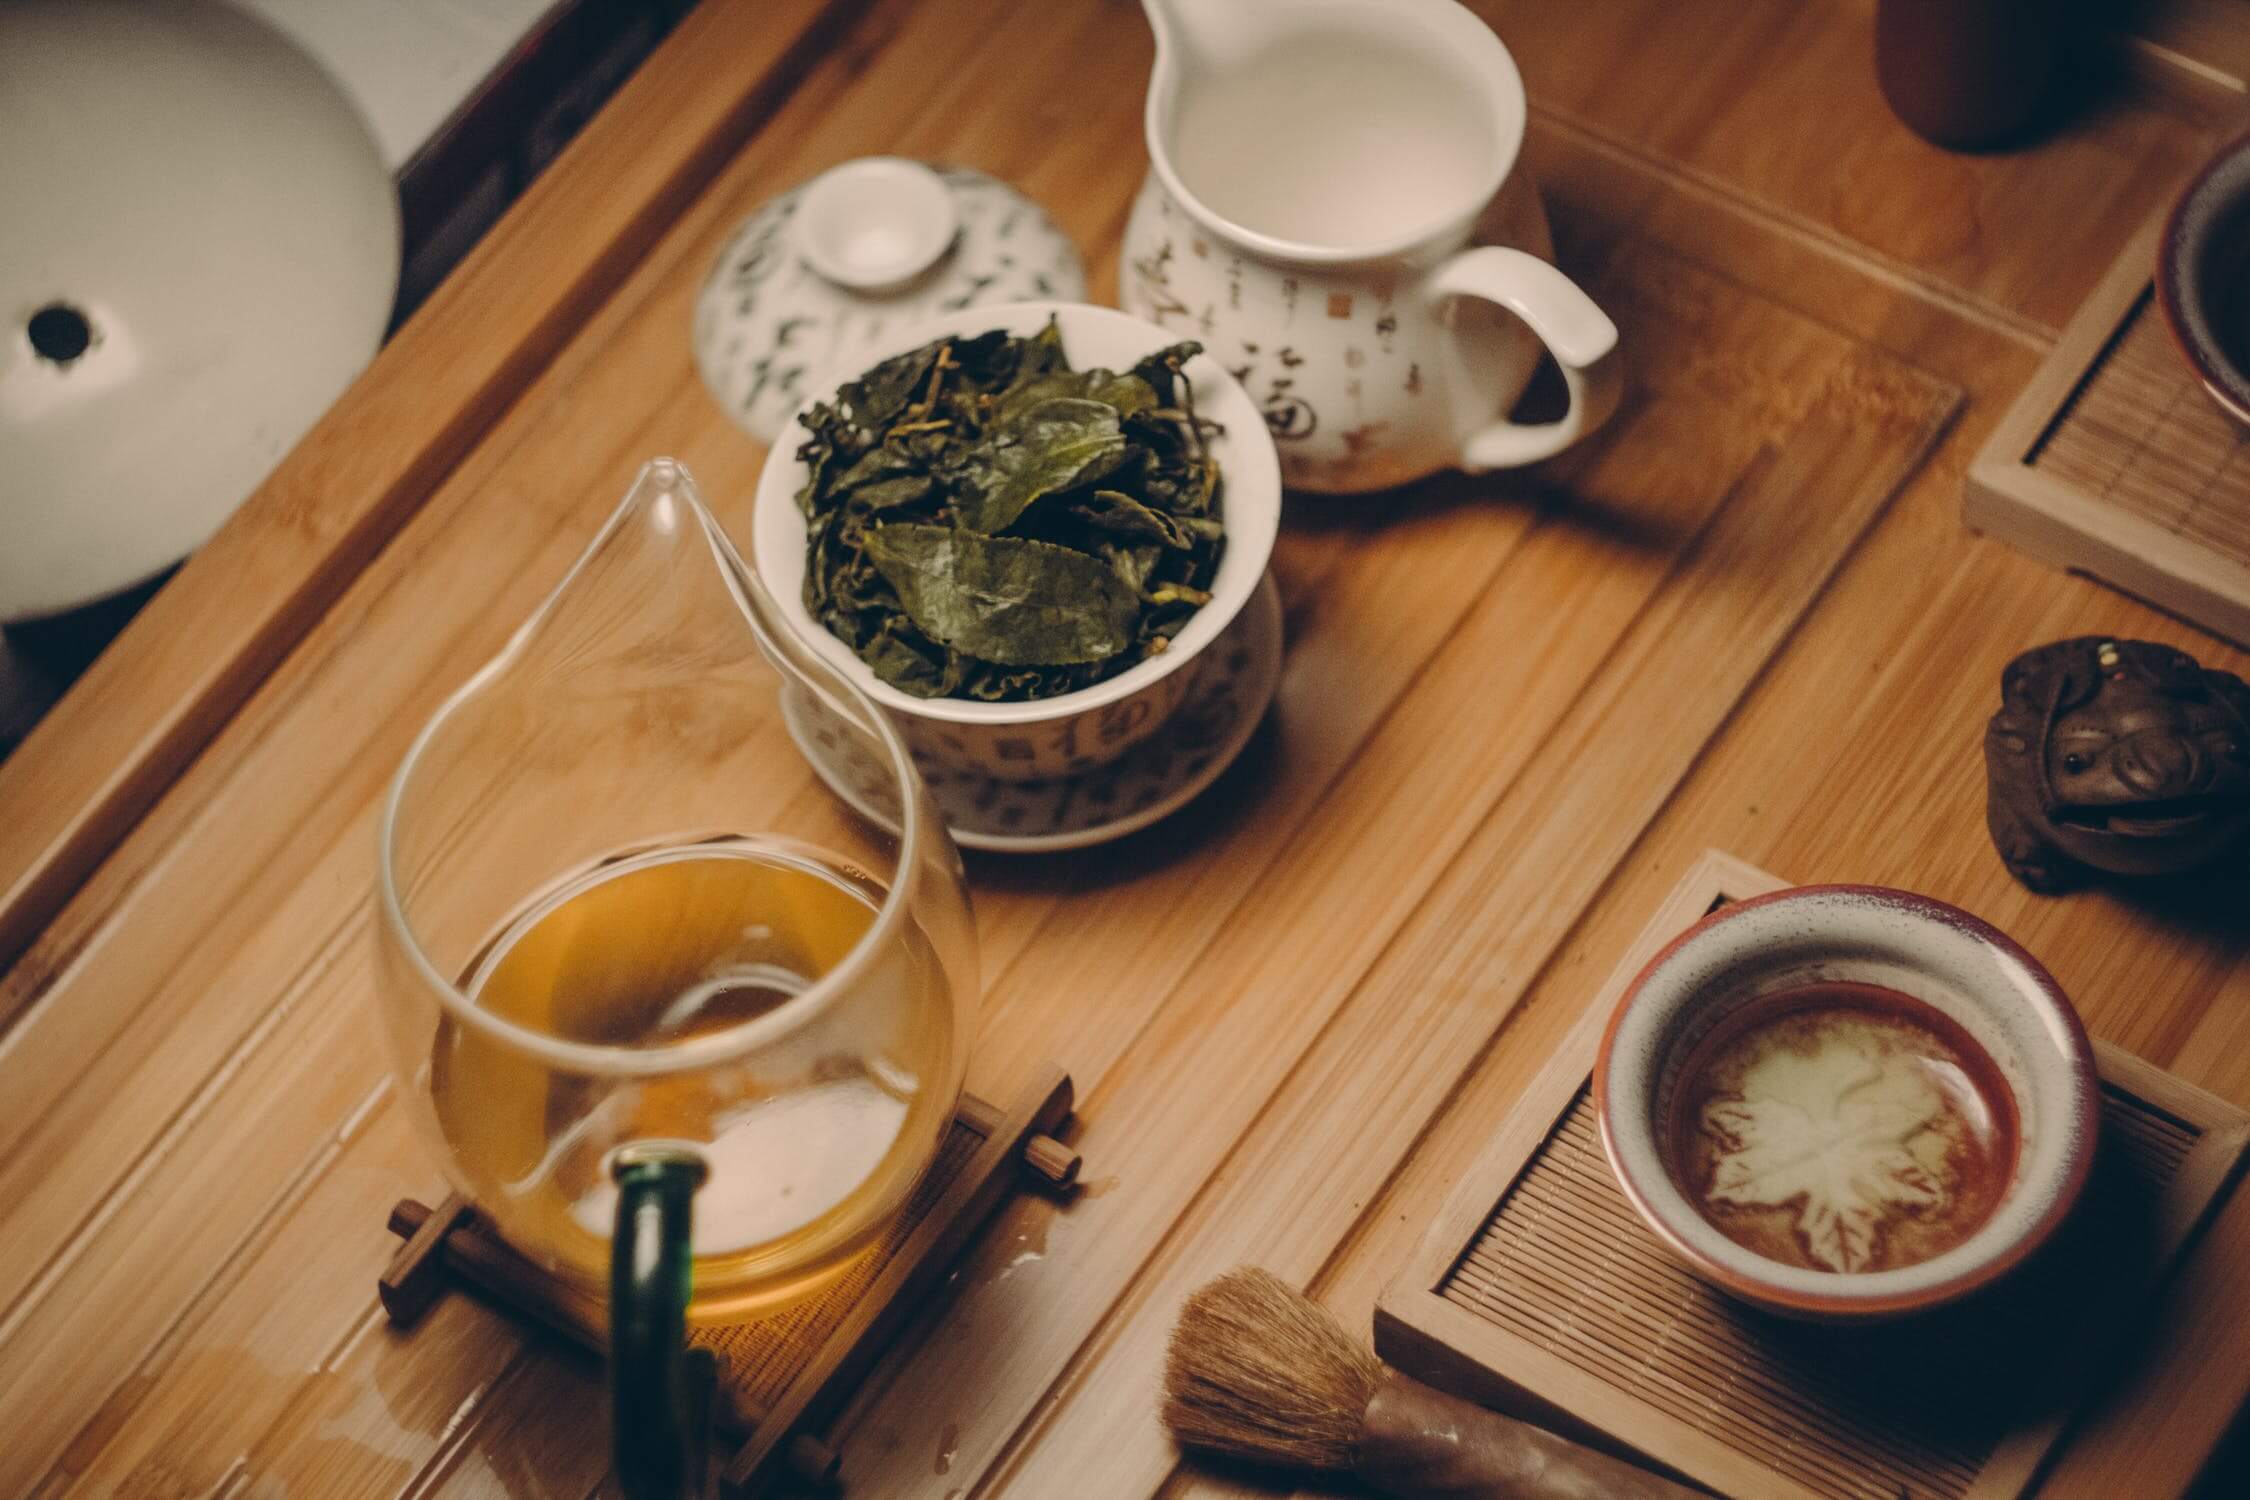  Ako zelený čaj správne konzumovať